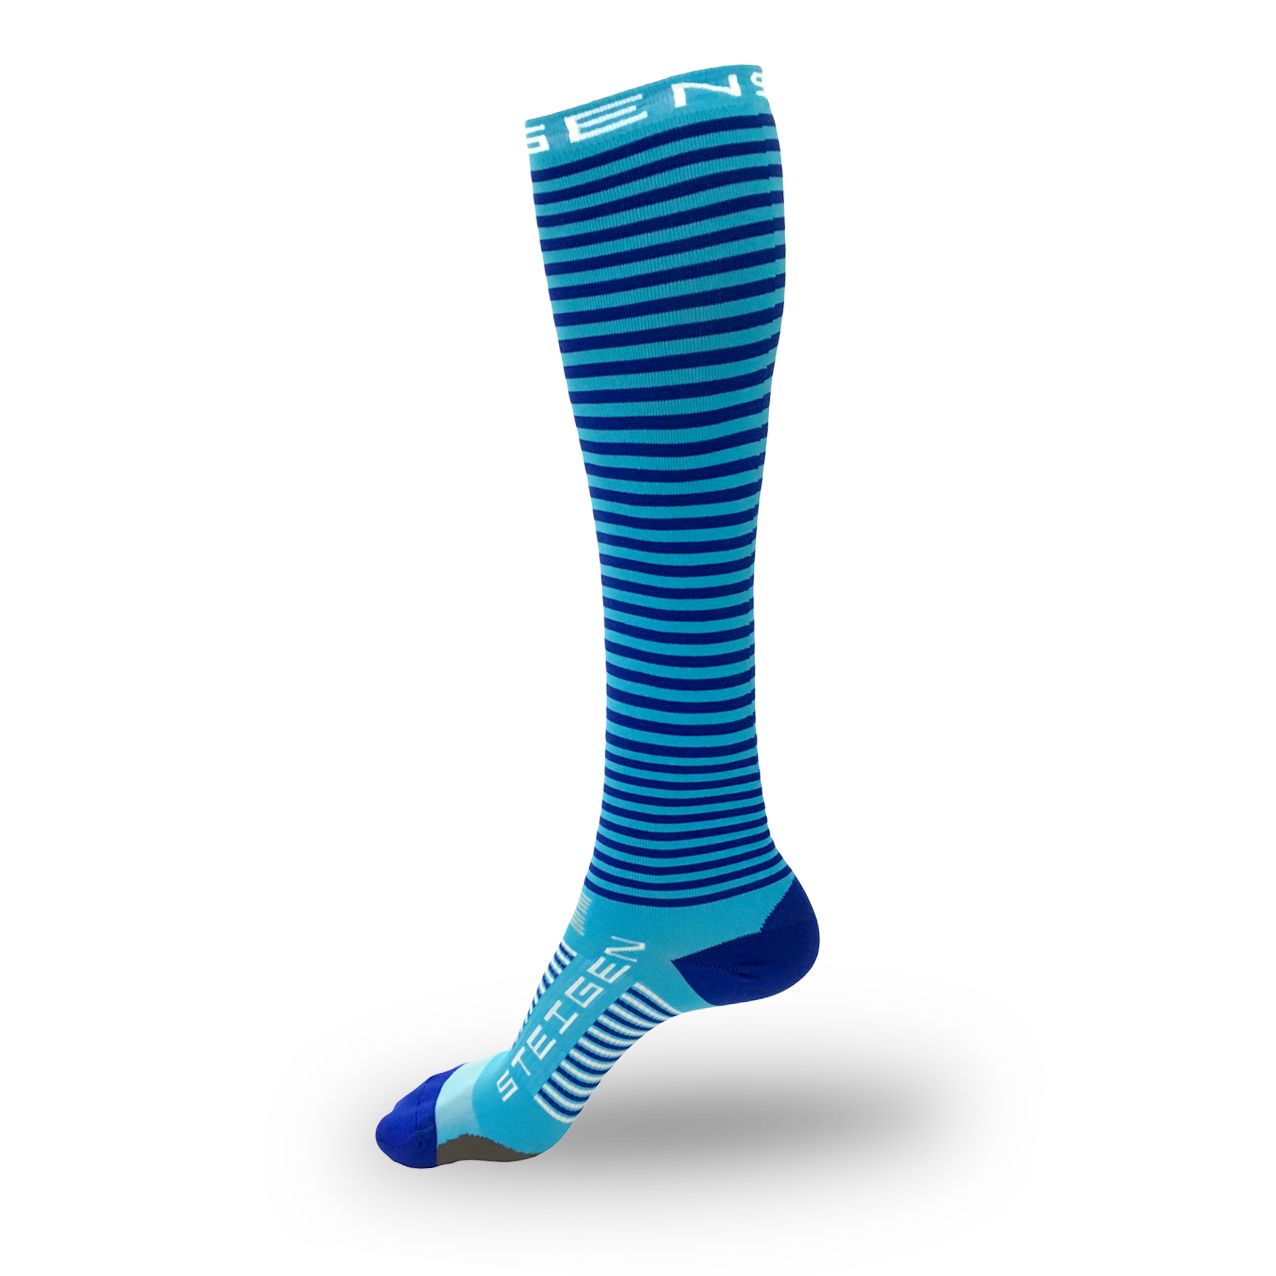 Blueberry Running Socks Full Length